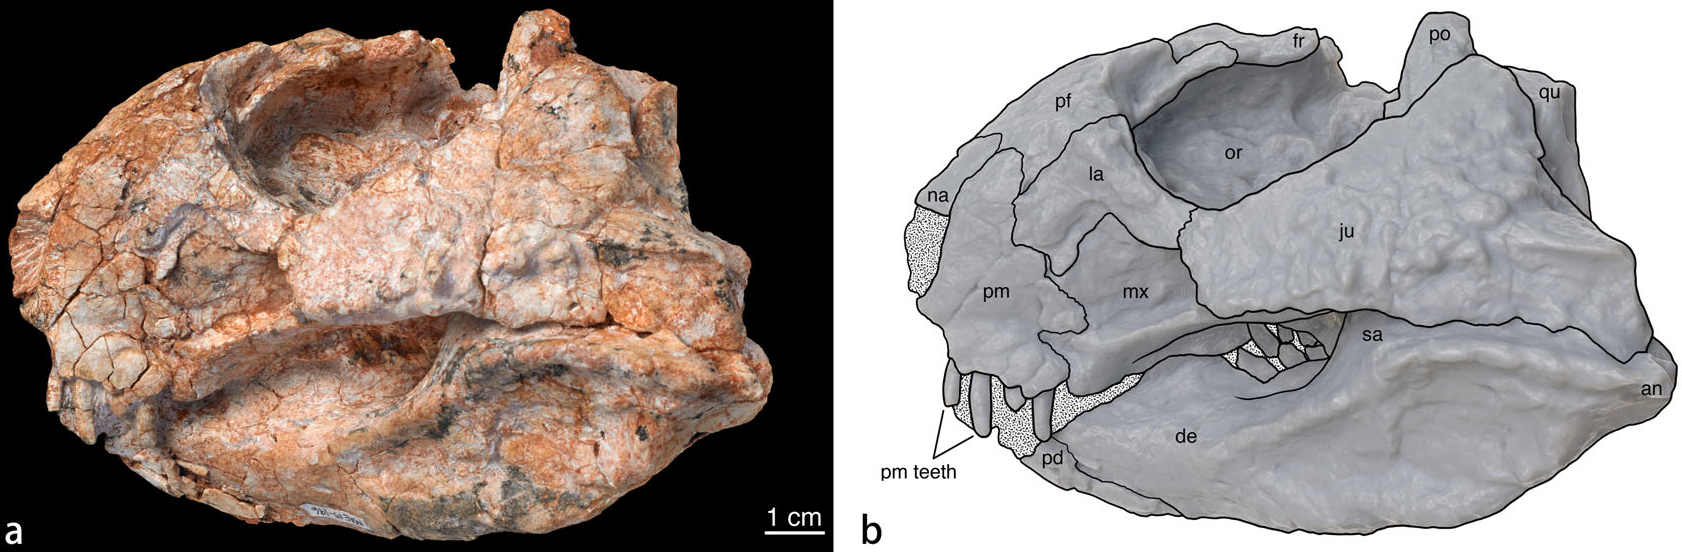 Fosilie lebky druhu Beg tse a její schematický nákres v původní popisné studii. Lebka tohoto malého neoceratopse by byla v kompletním stavu dlouhá zhruba 14 centimetrů, celková délka těla dinosaura pak nepřesahovala zhruba rovný metr. Jednalo se tedy